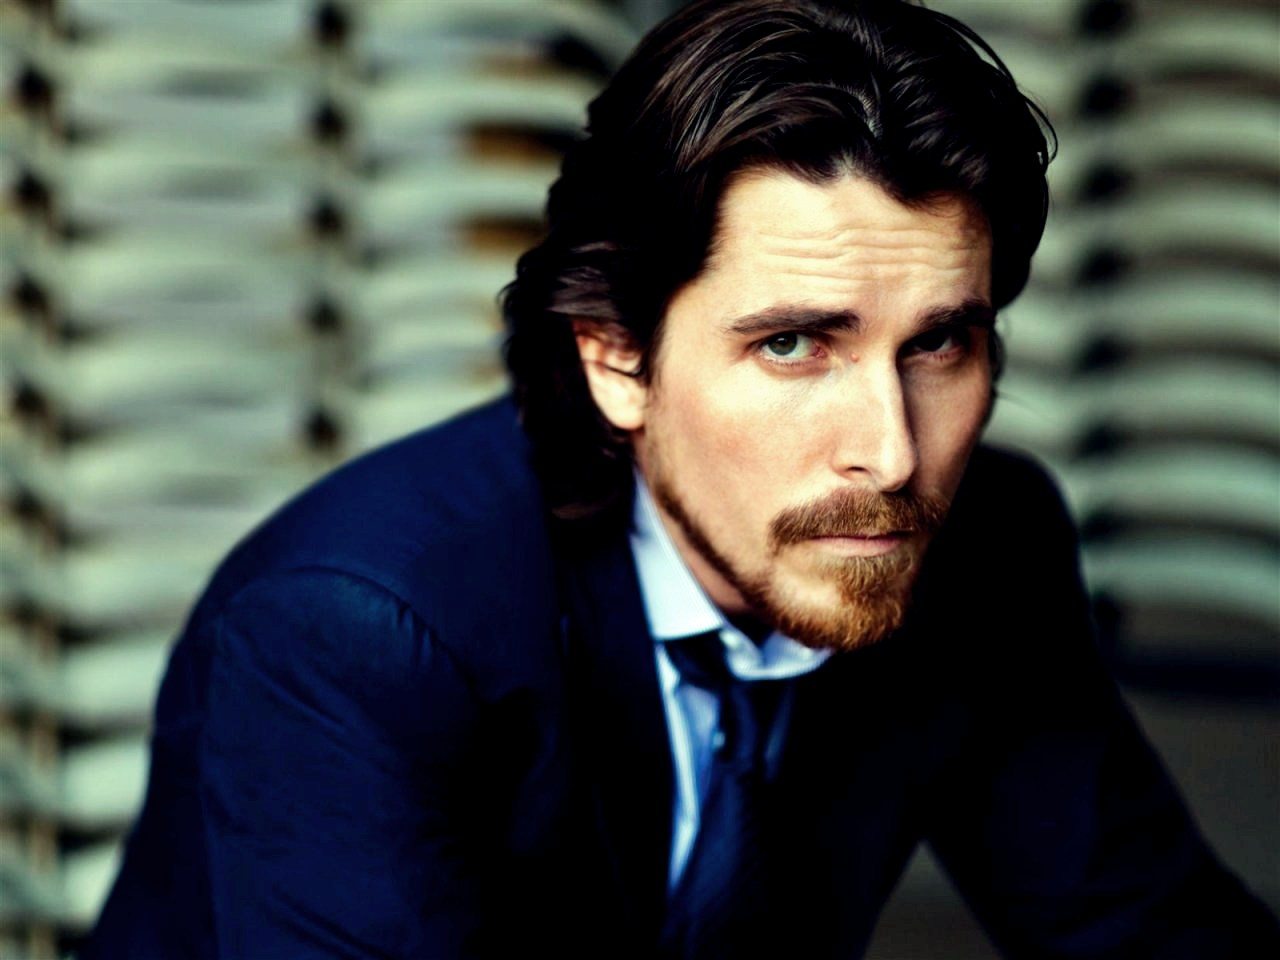 “C’est très agréable de jouer des connards.” Retour sur notre rencontre avec Christian Bale